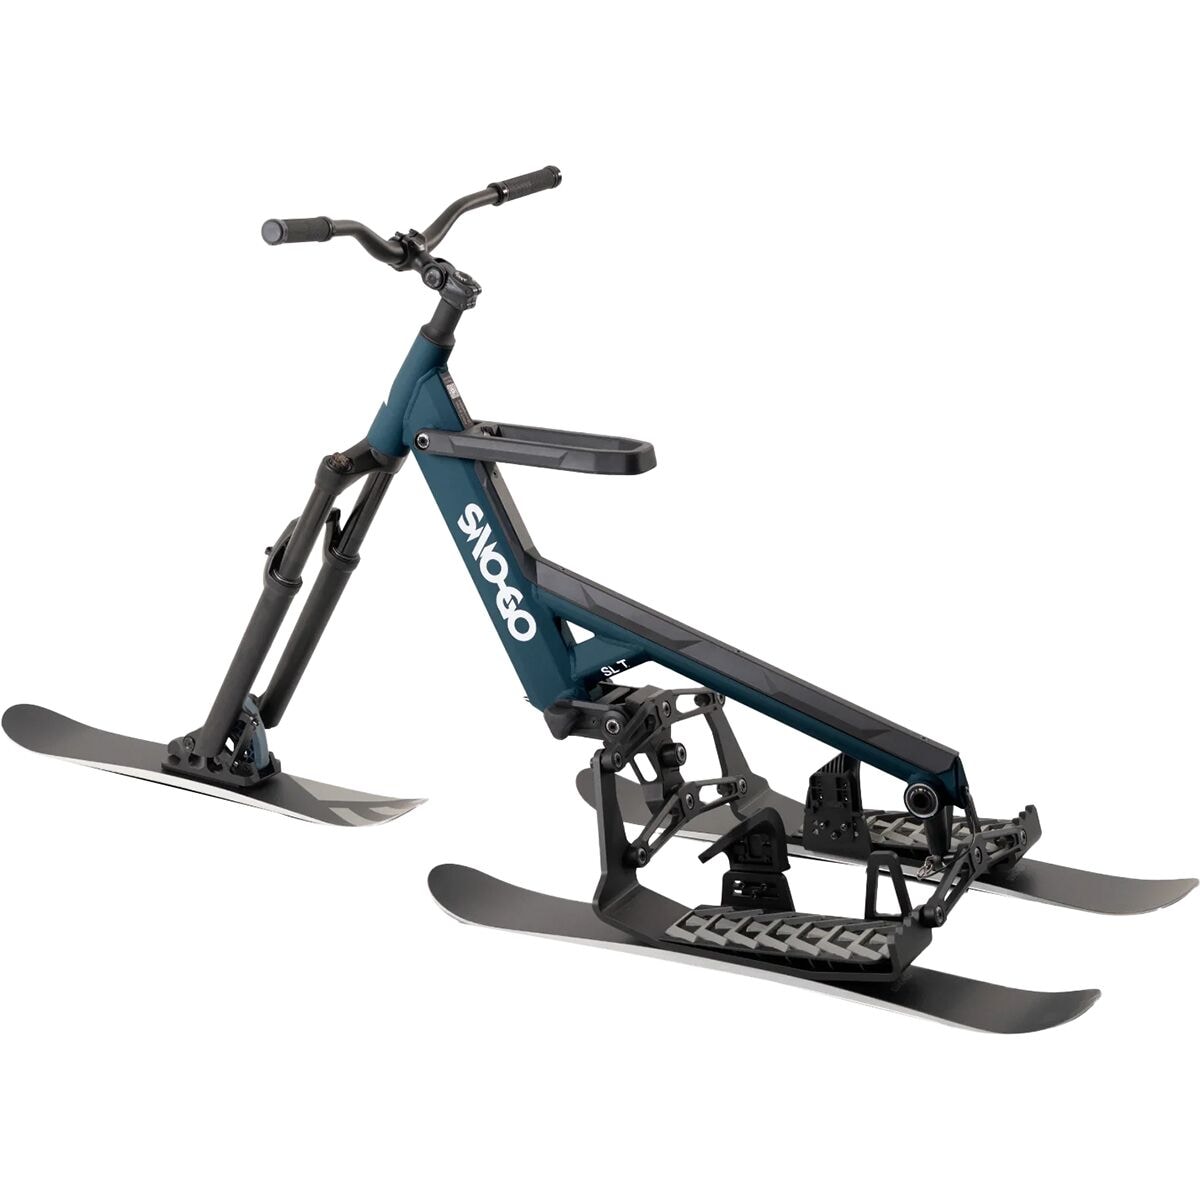 SNO-GO Shift Ski Bike | eBay